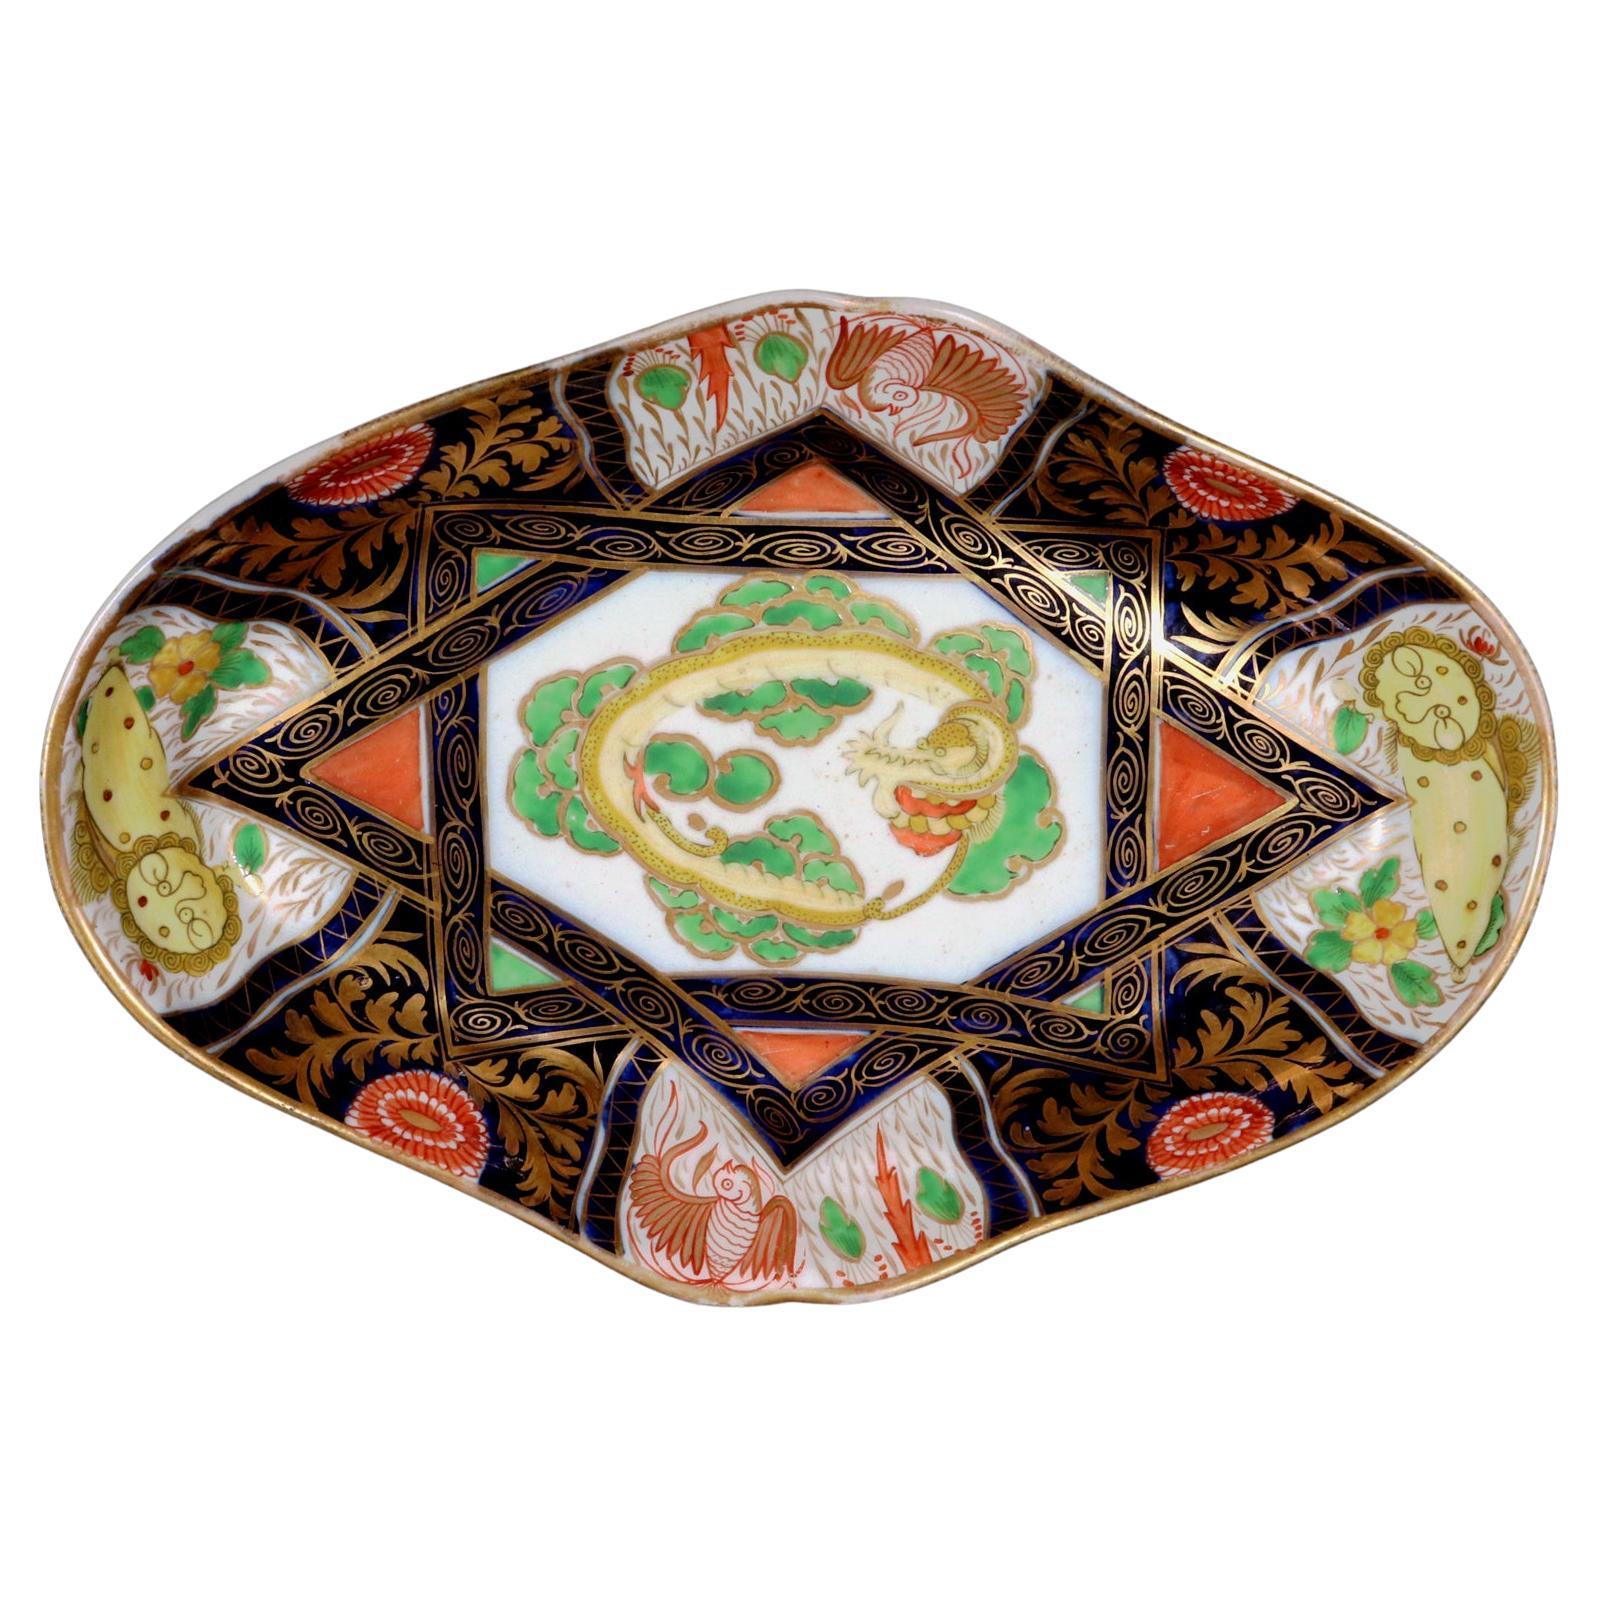 Coalport Porcelain Chinoiserie-Geschirr mit gelbem Drachen und Löwen aus der Regency-Zeit